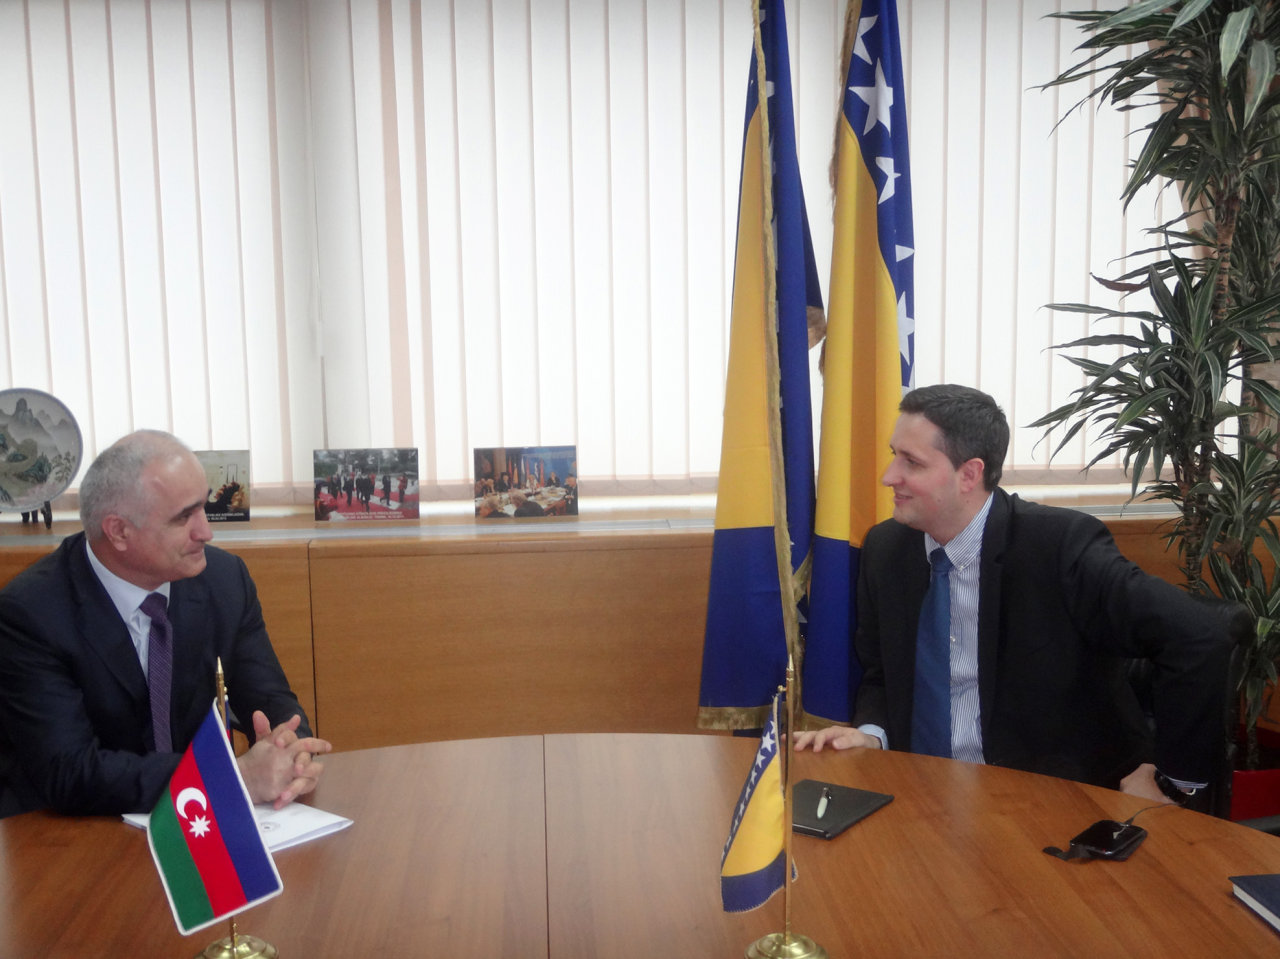 Босния и Герцеговина призывает азербайджанский бизнес к активному сотрудничеству (ФОТО)